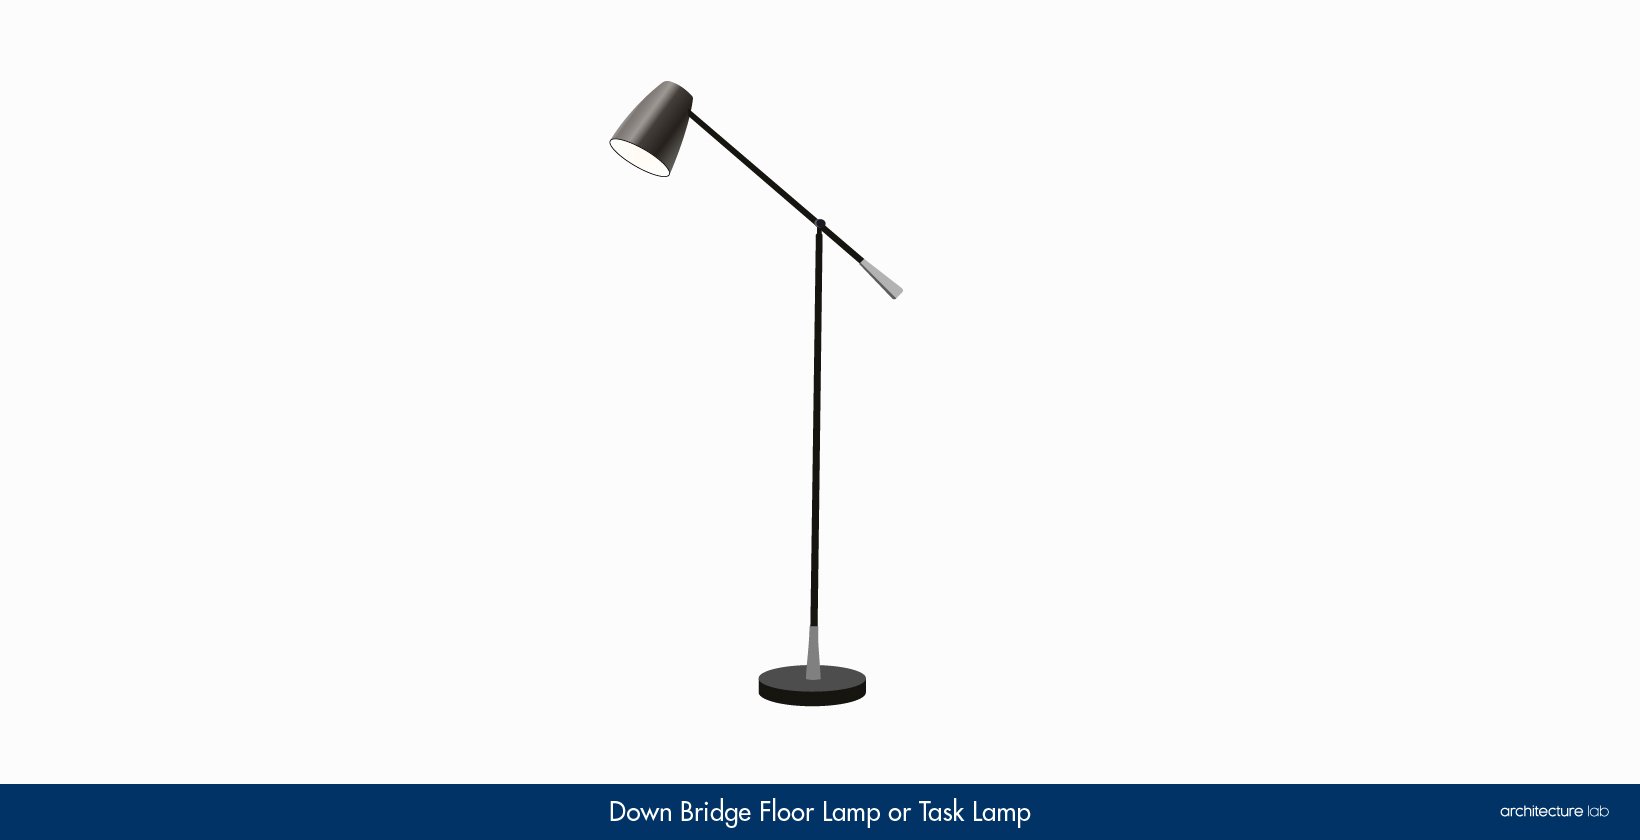 11. Down bridge floor lamp or task lamp